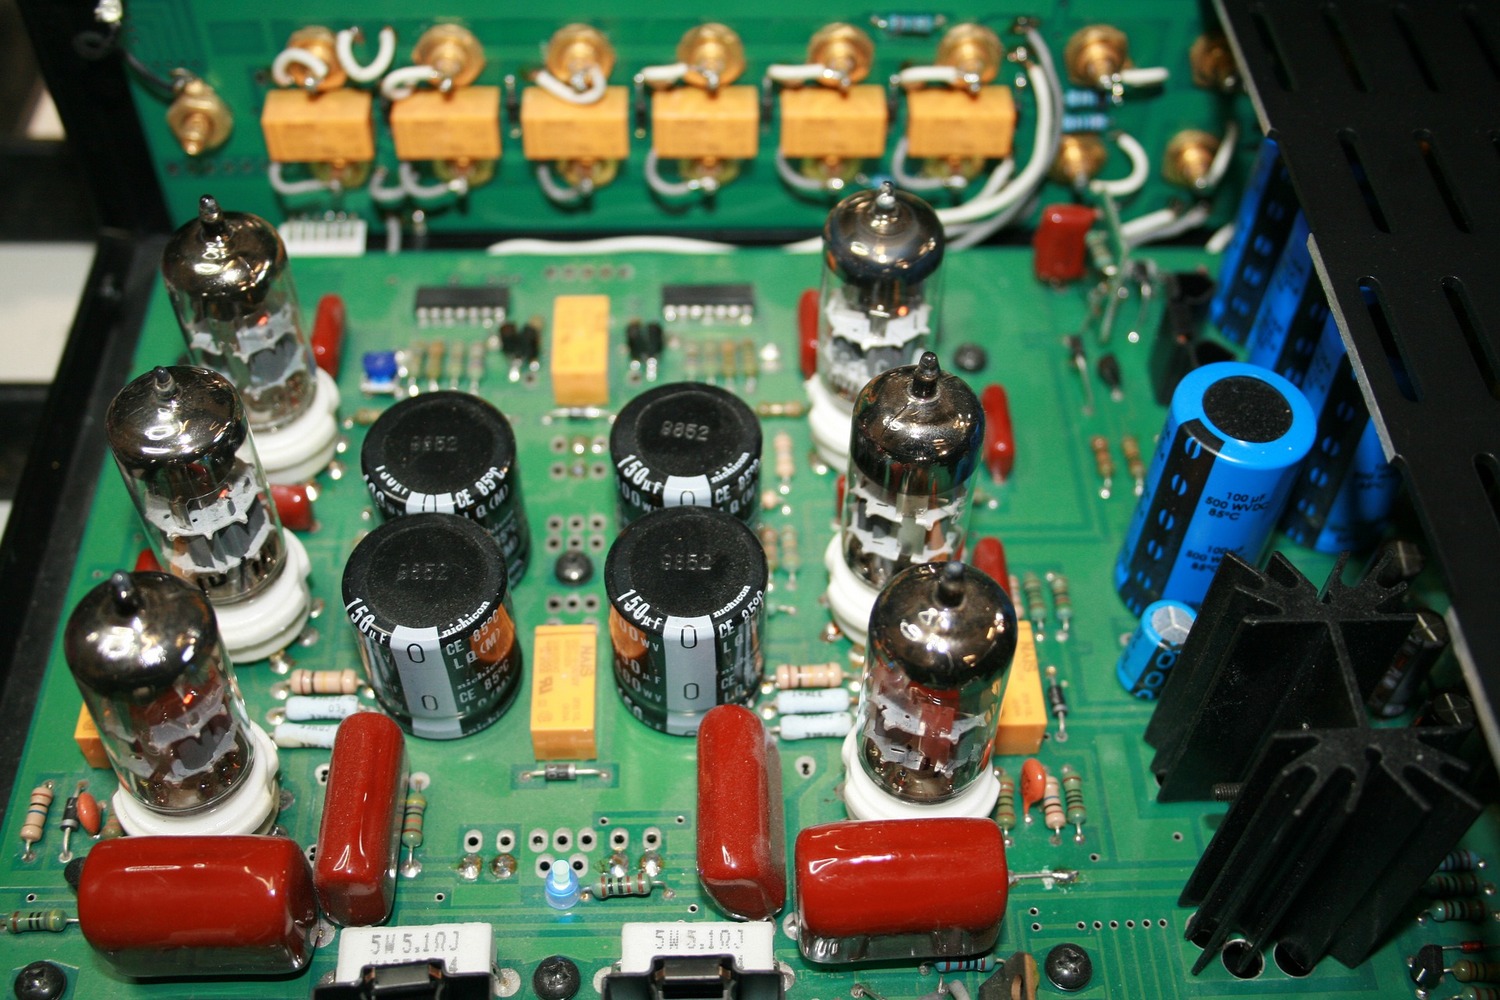 radio components